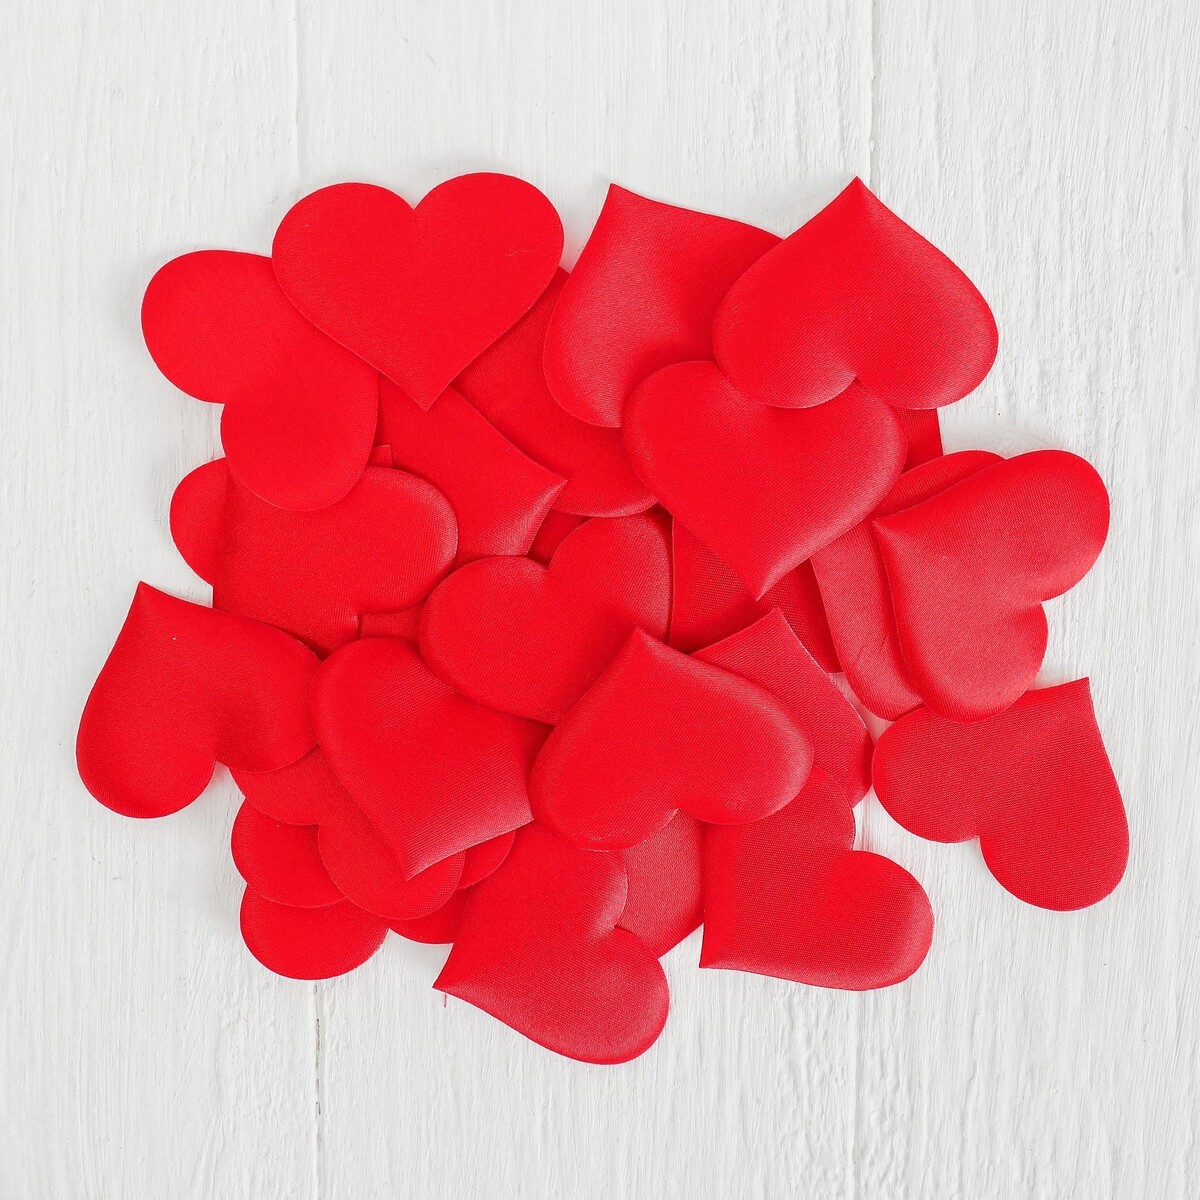 Сердечки декоративные, набор 25 шт., 5 см, цвет красный эмпрана подарок впечатление сны джульетты